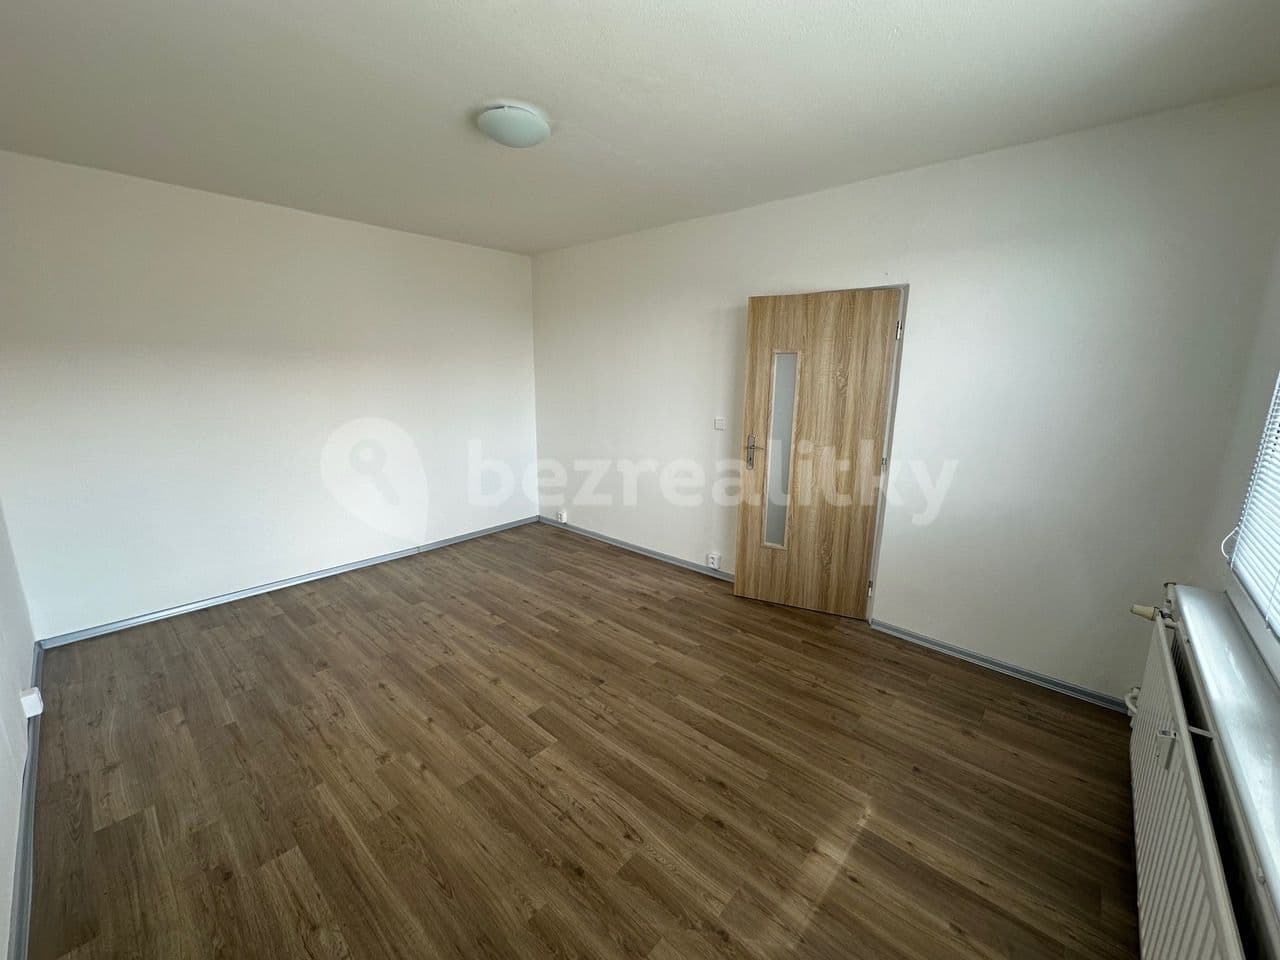 1 bedroom with open-plan kitchen flat to rent, 36 m², 5. května, Česká Lípa, Liberecký Region